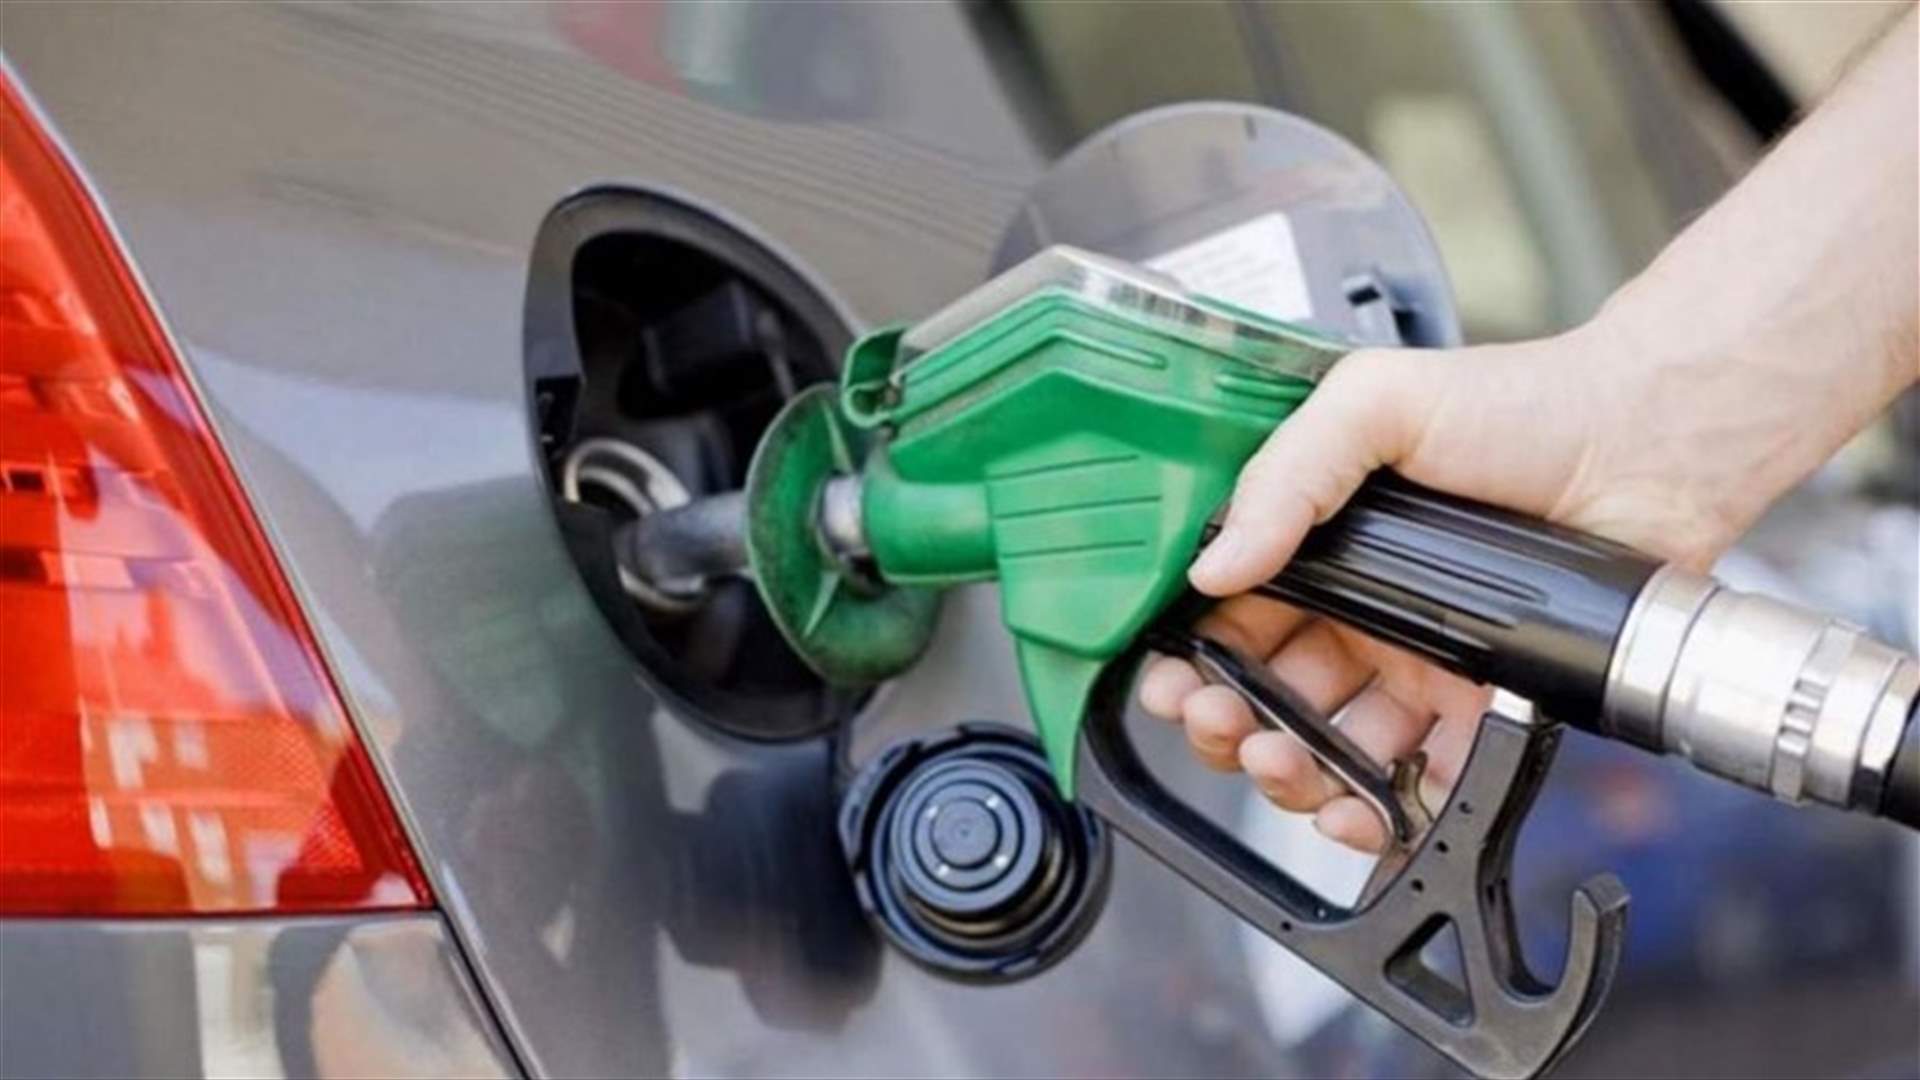 ما سبب شحّ البنزين؟ وهل ترشيد الدعم سيرفع أسعار المحروقات؟ (الشرق الأوسط)